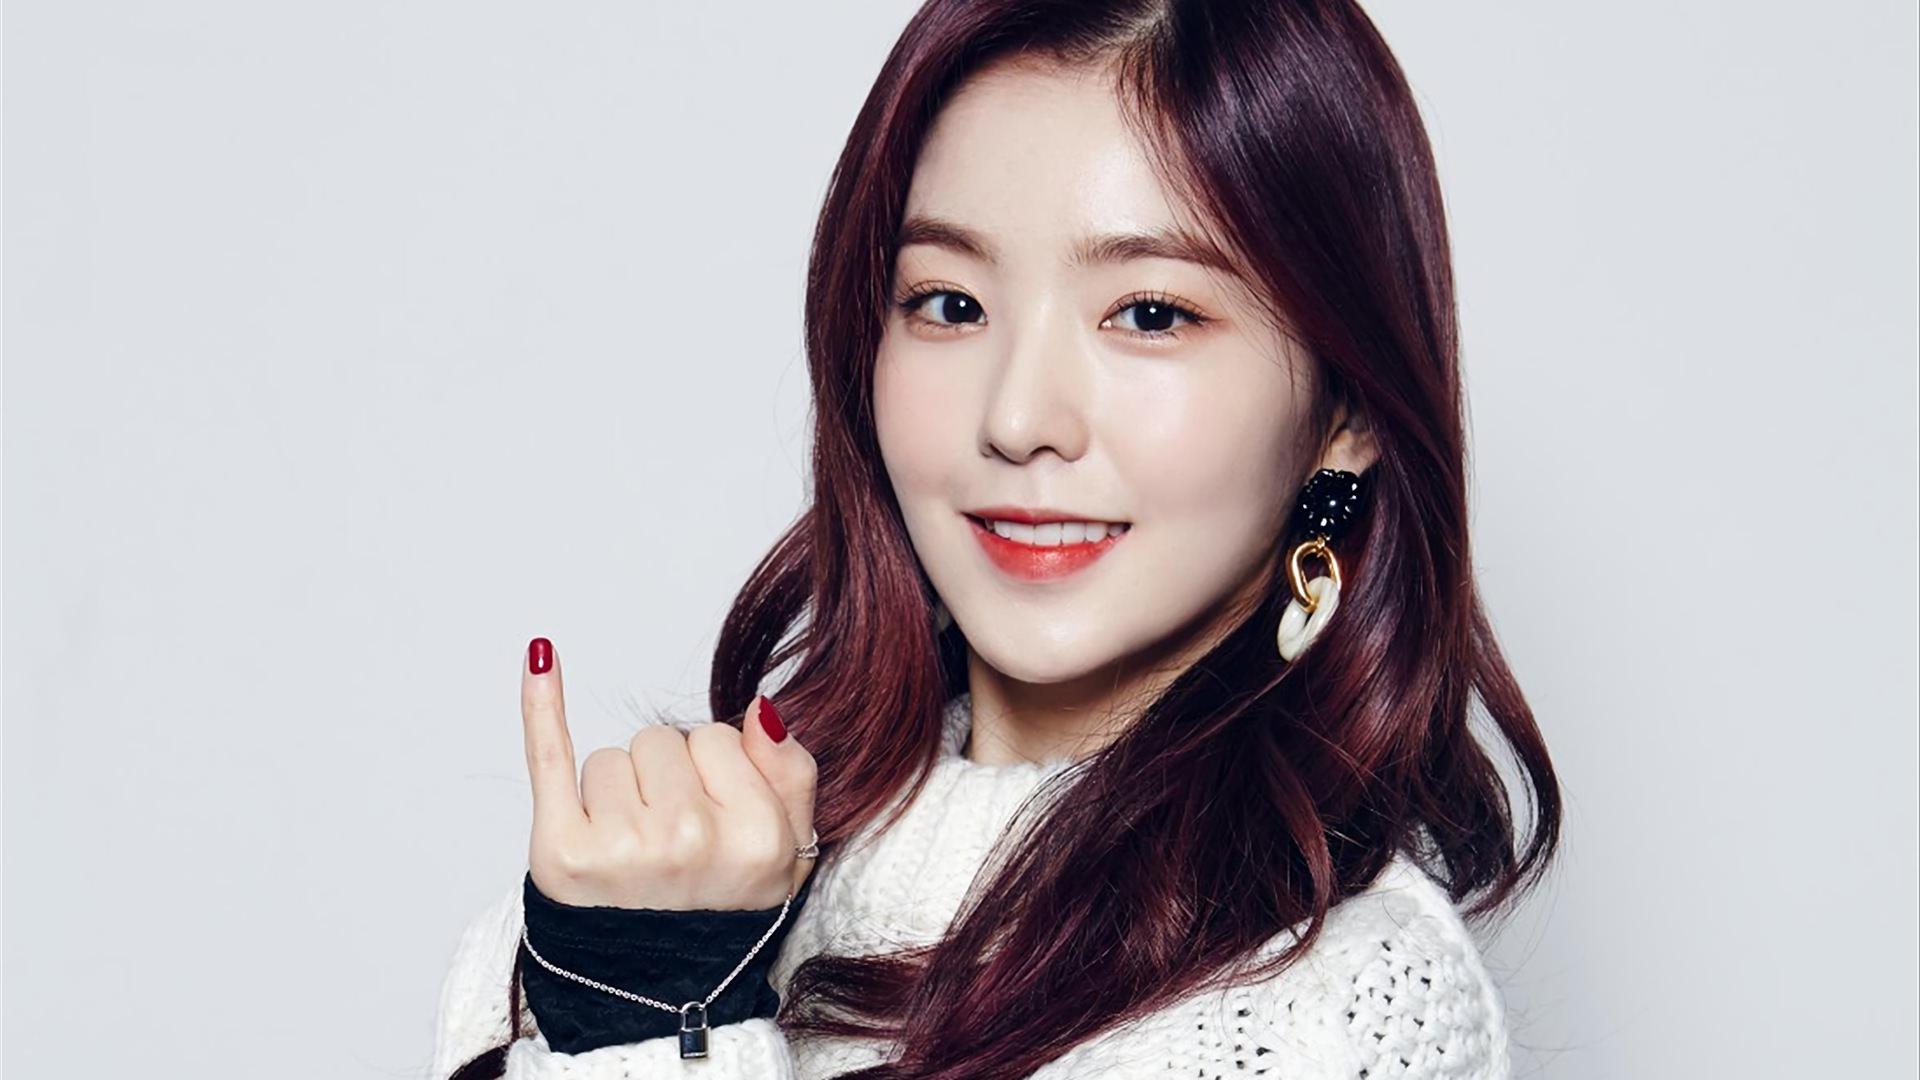 Irene Red Velvet Girl Wallpaper